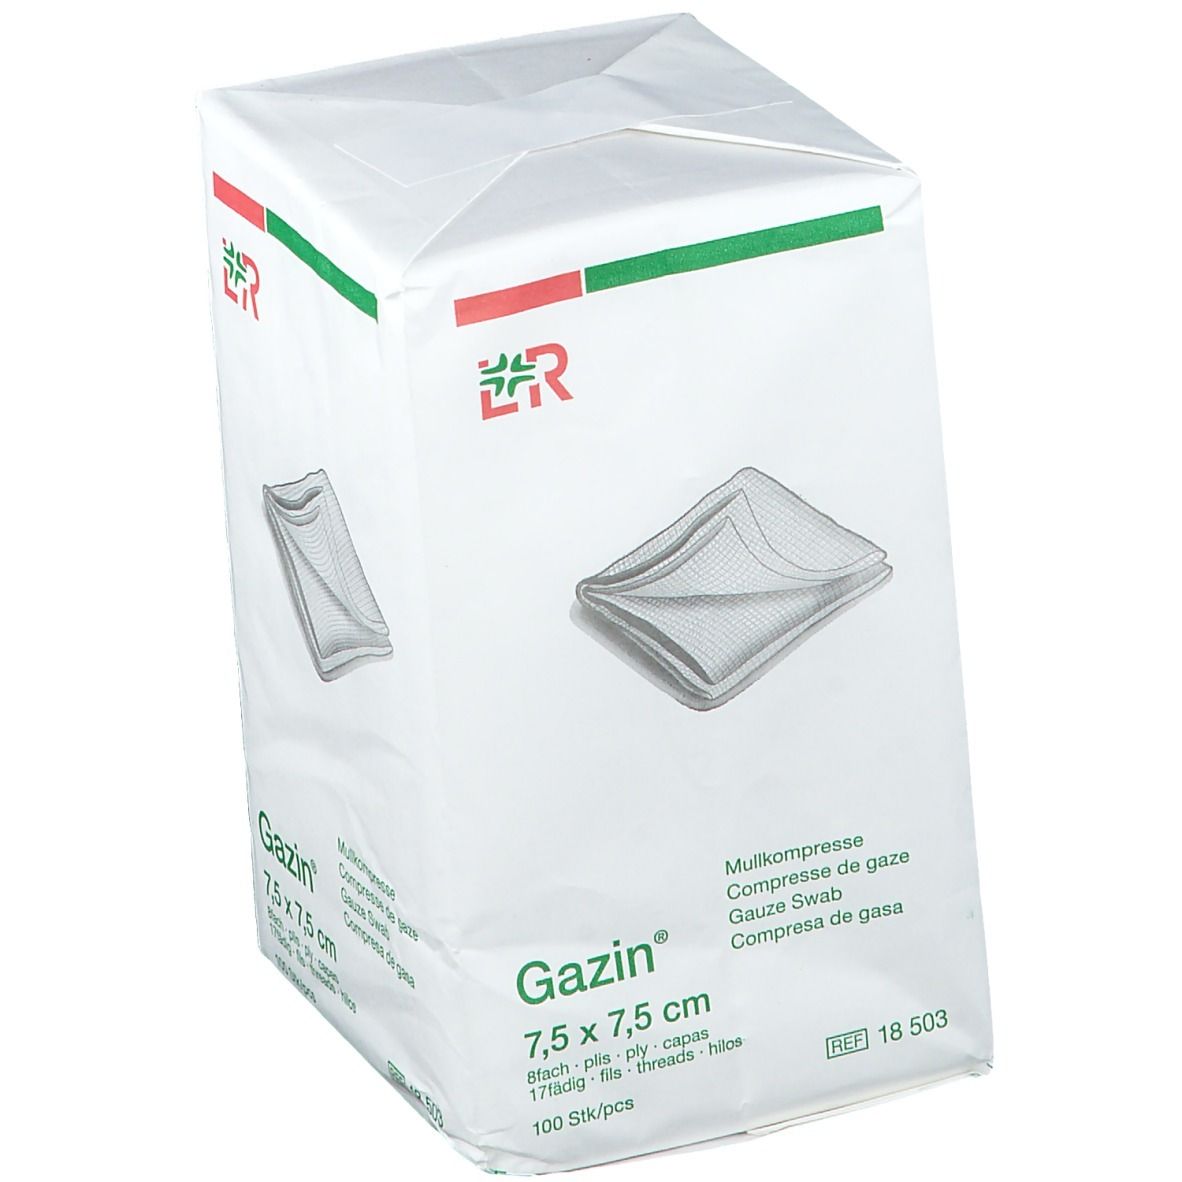 Lohmann & Rauscher Gazin® Compresse di Garza 7,5 x 7, 5 cm Non Sterile